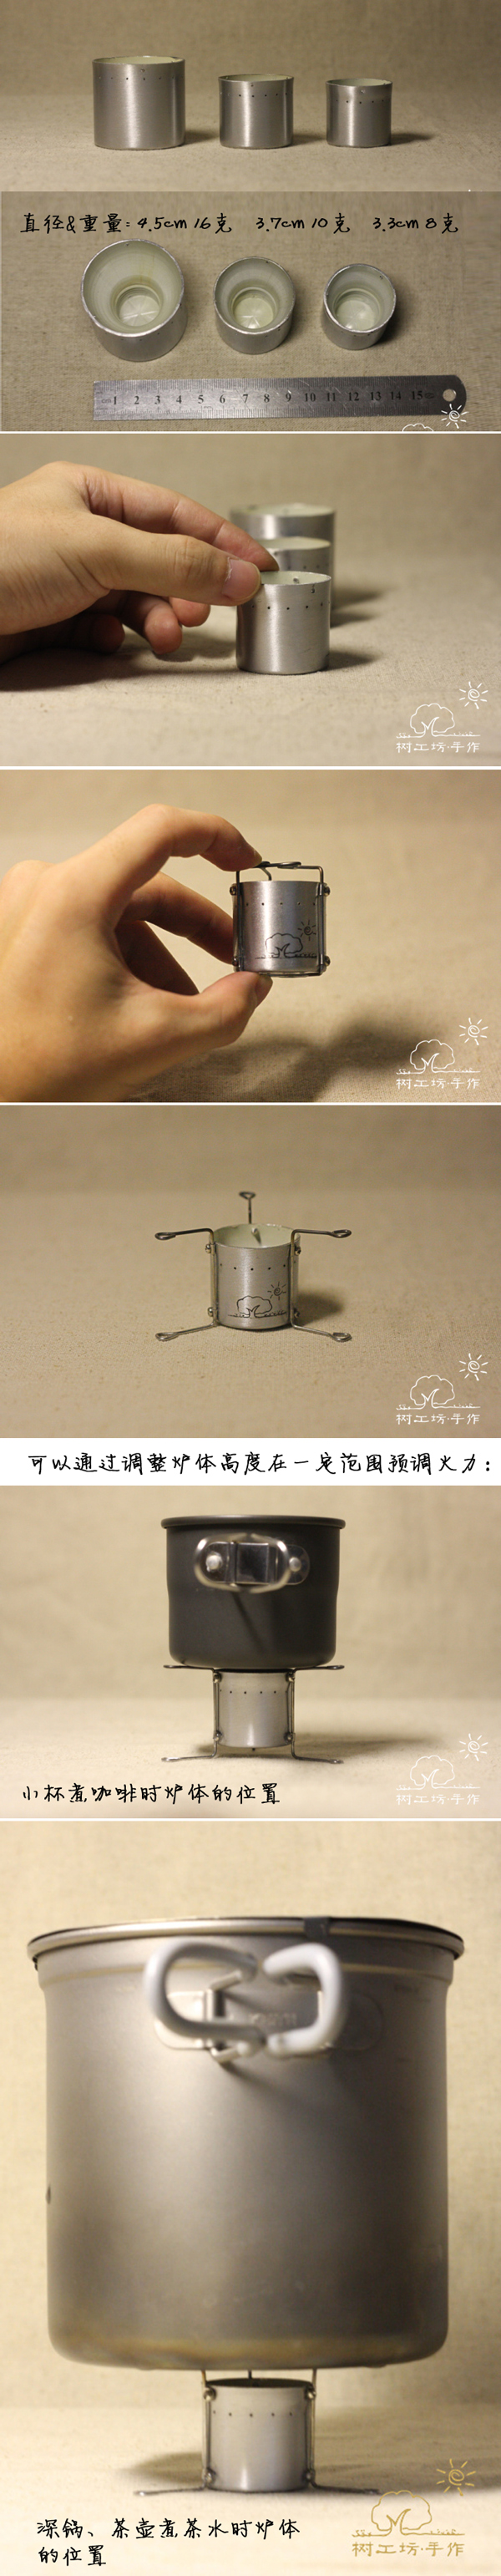 文艺青年专用煮咖啡煮茶利器.jpg